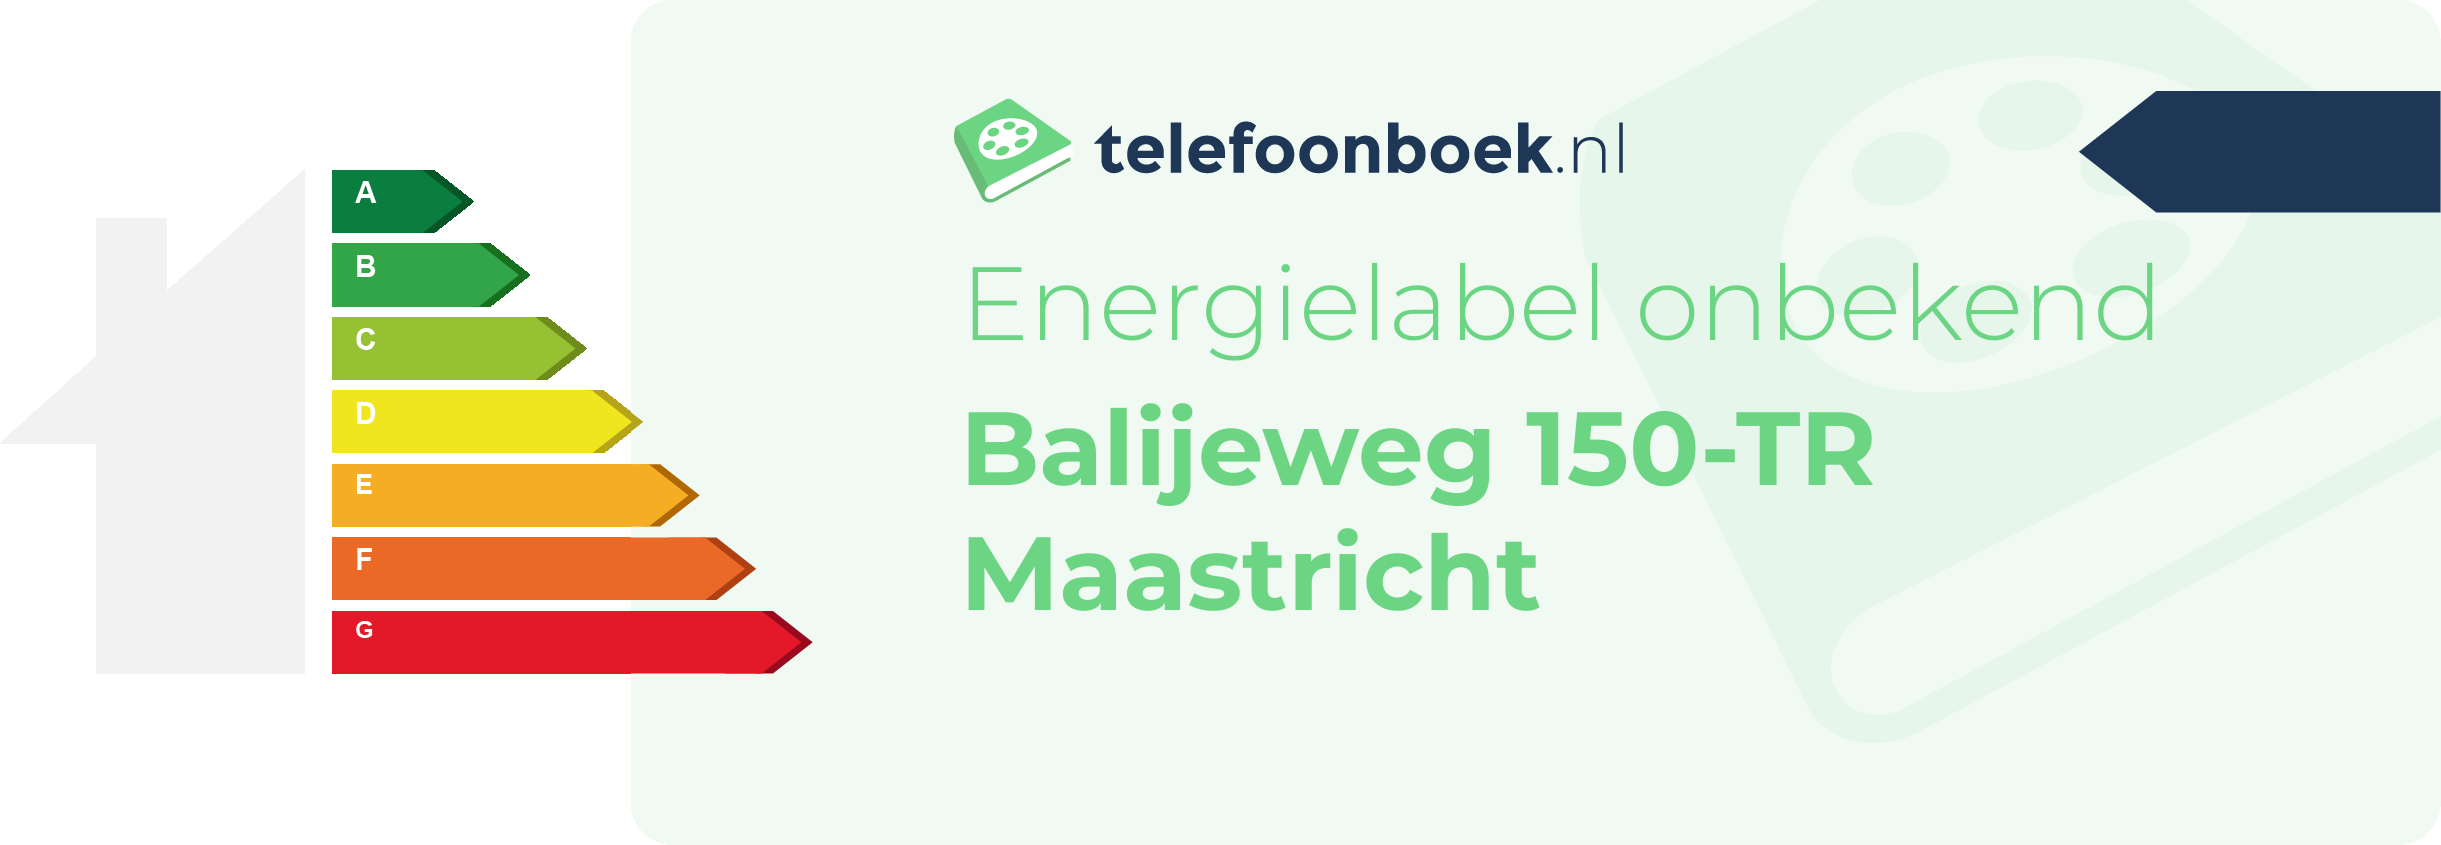 Energielabel Balijeweg 150-TR Maastricht